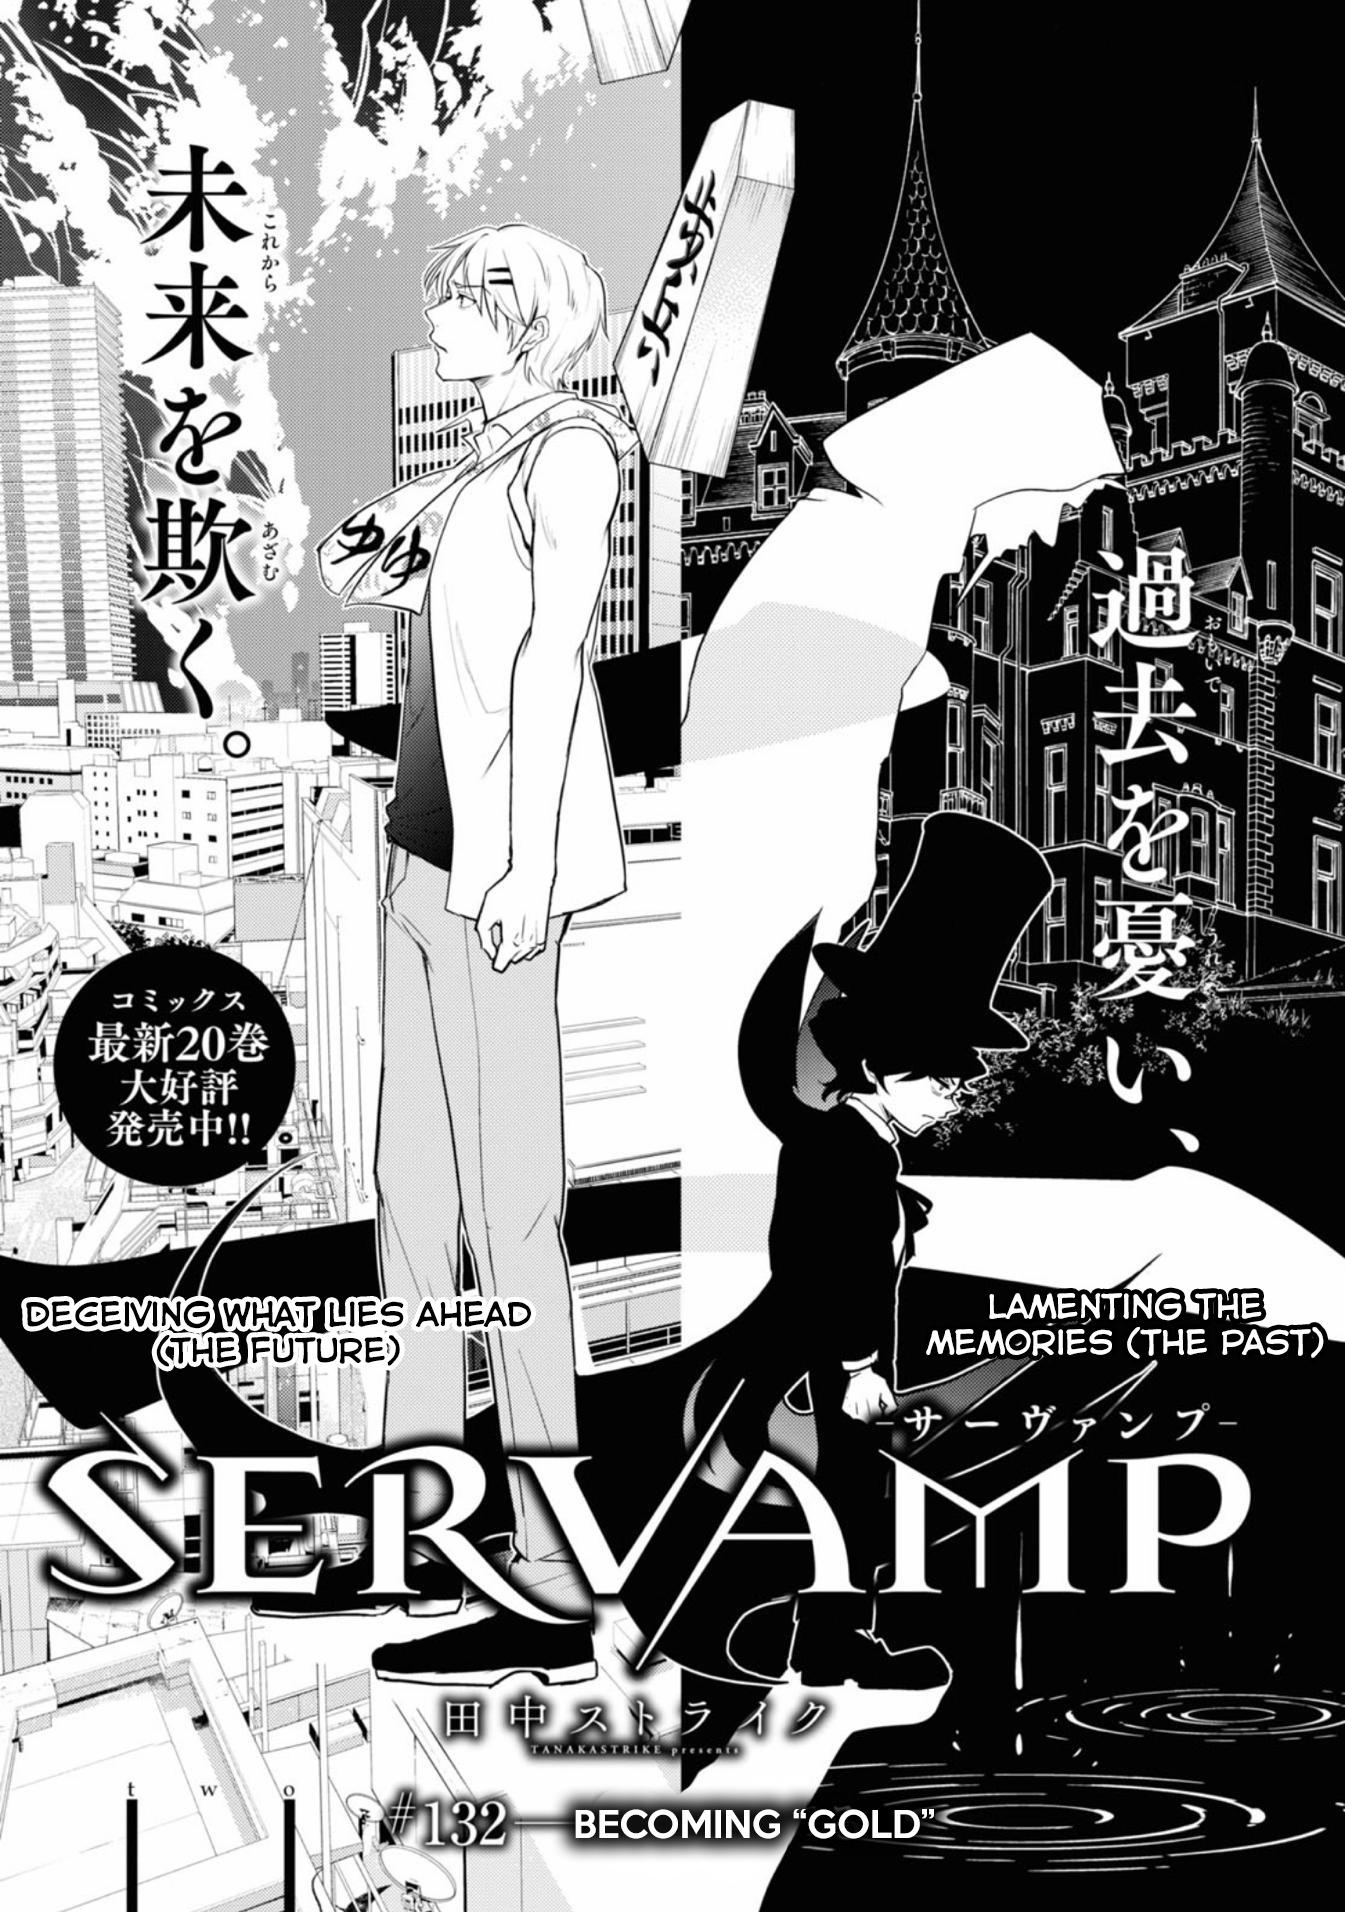 Servamp - episode 137 - 0